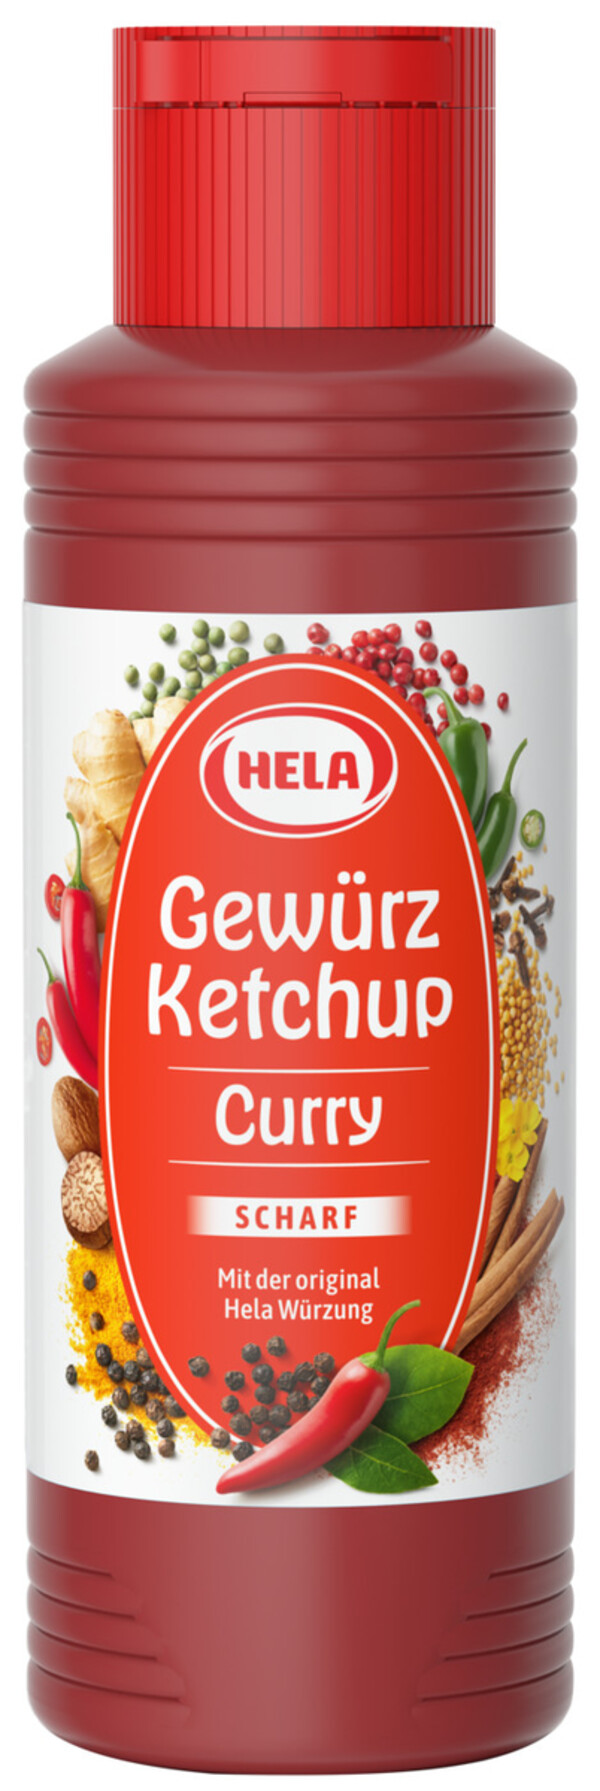 Hela Curry Gewürz Ketchup scharf 300 ml von Edeka24 für 1,89 € ansehen!